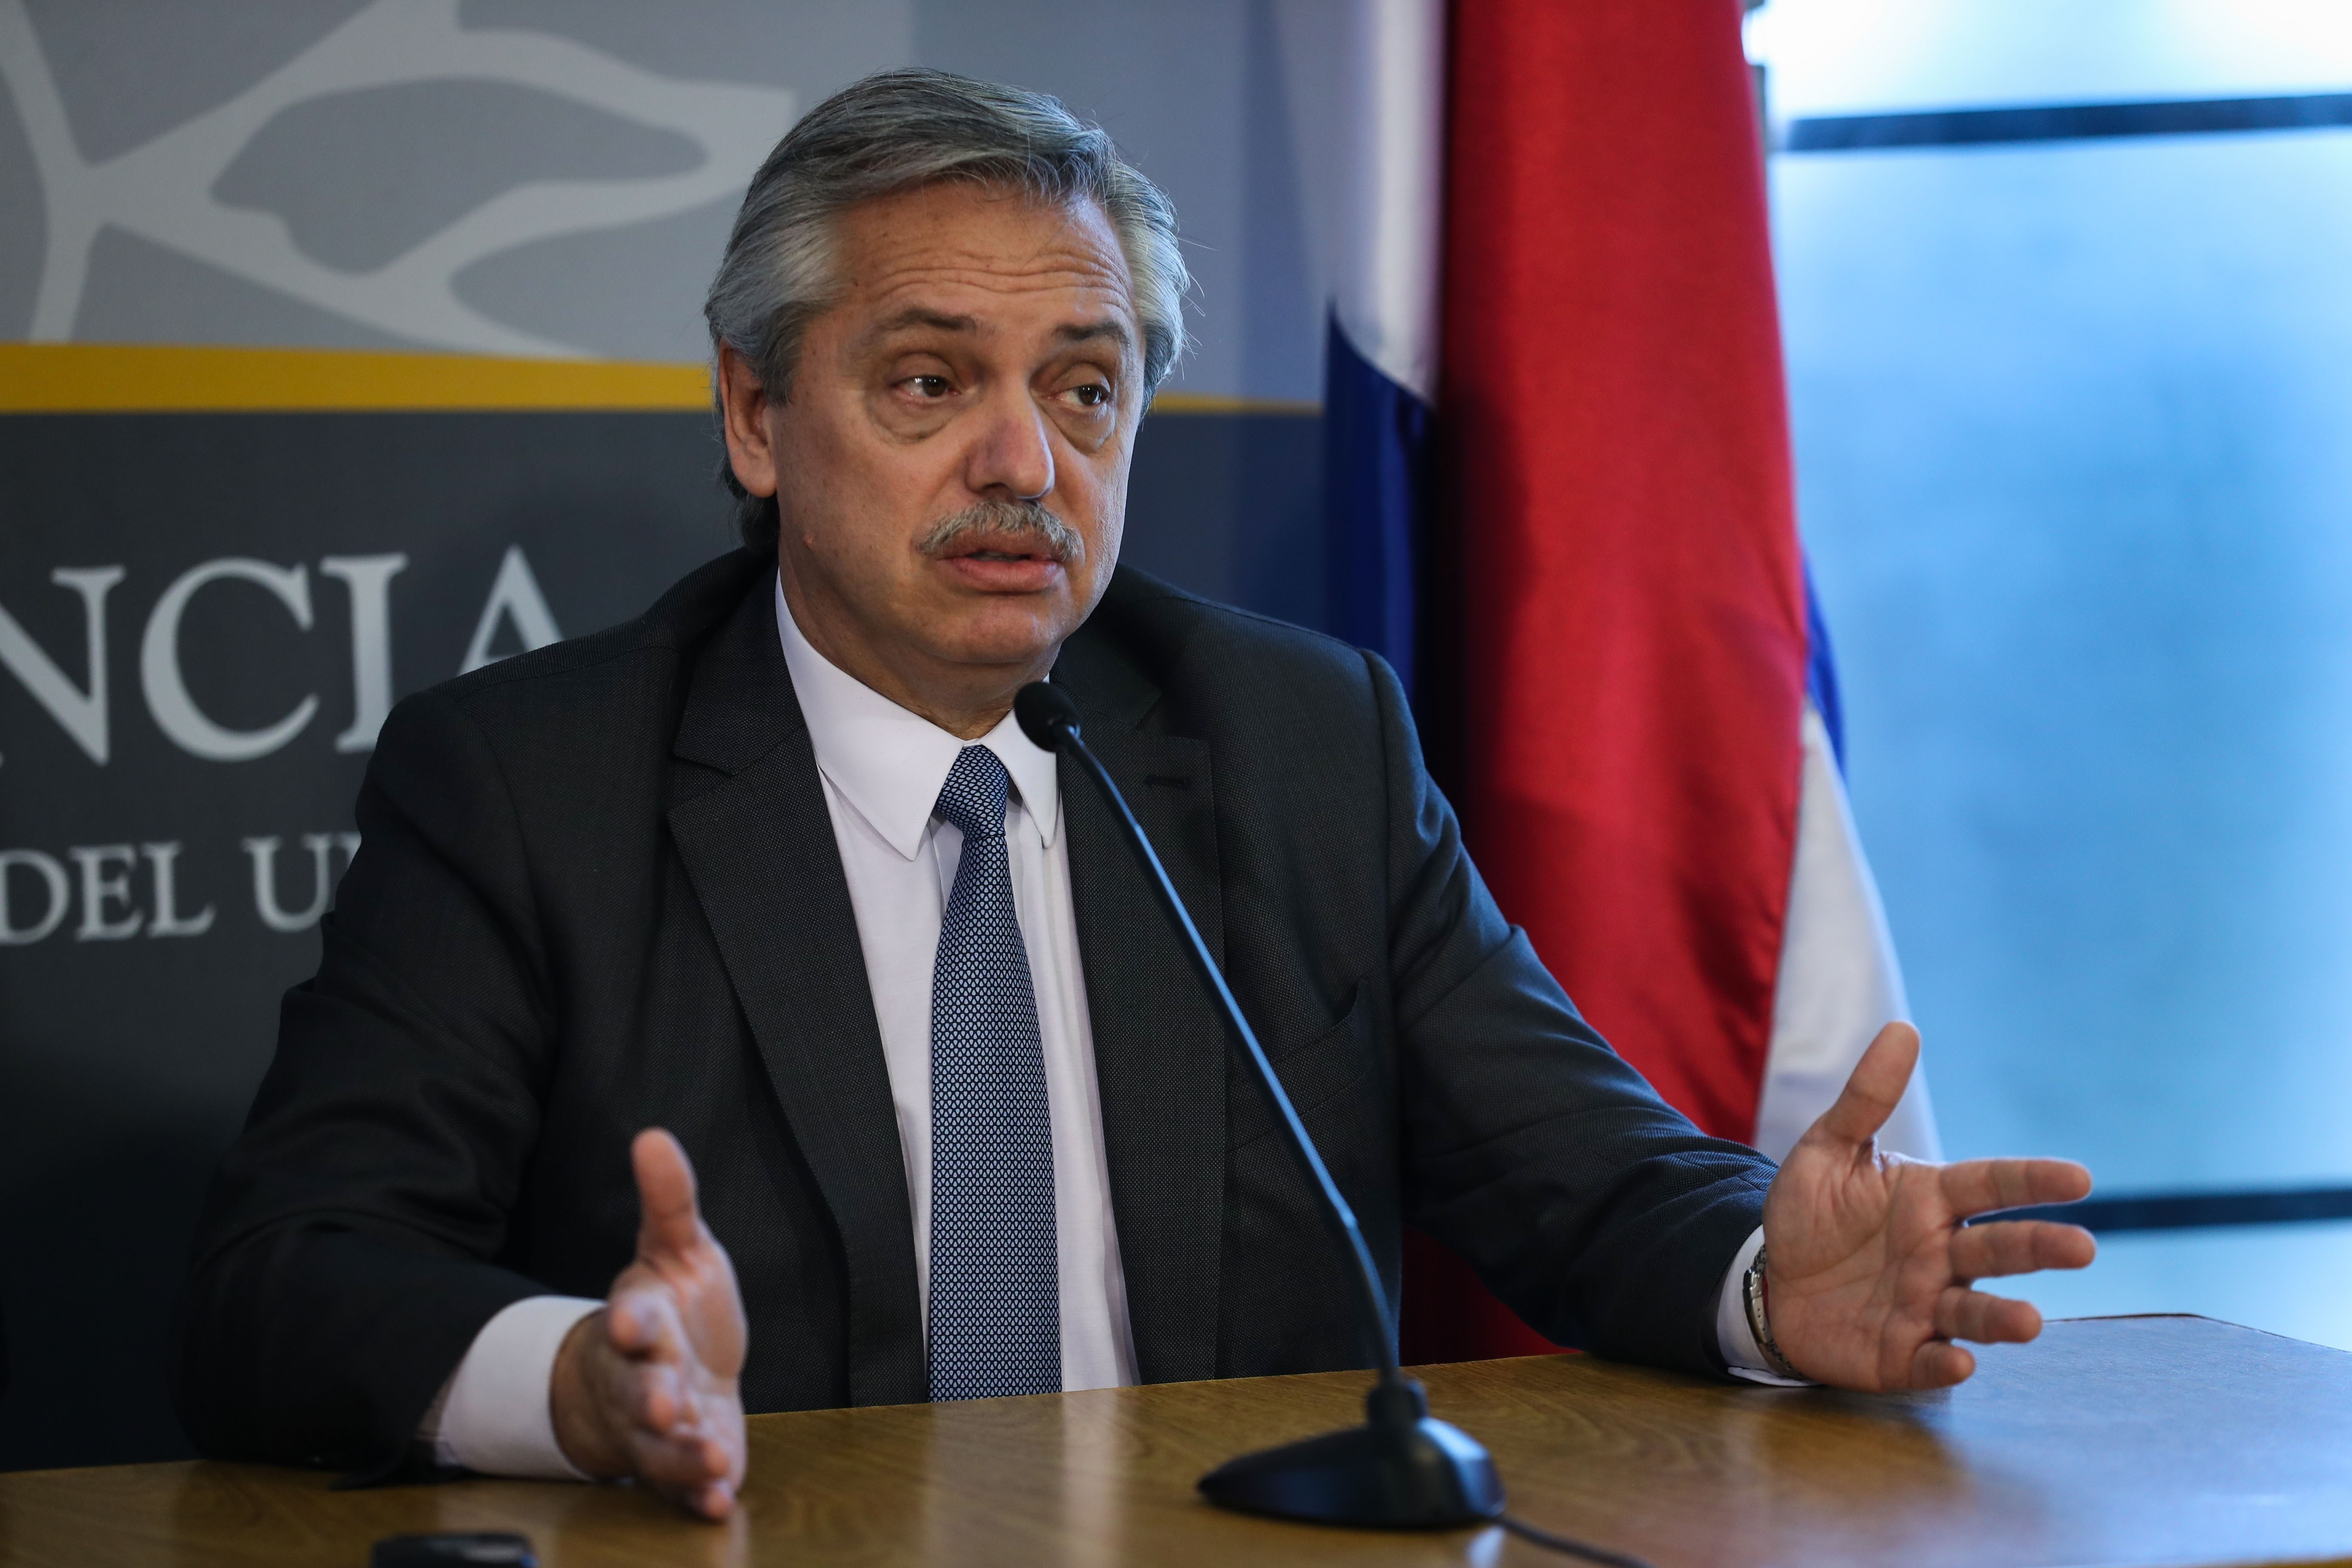 Alberto Fernández en la quinta presidencial de Olivos